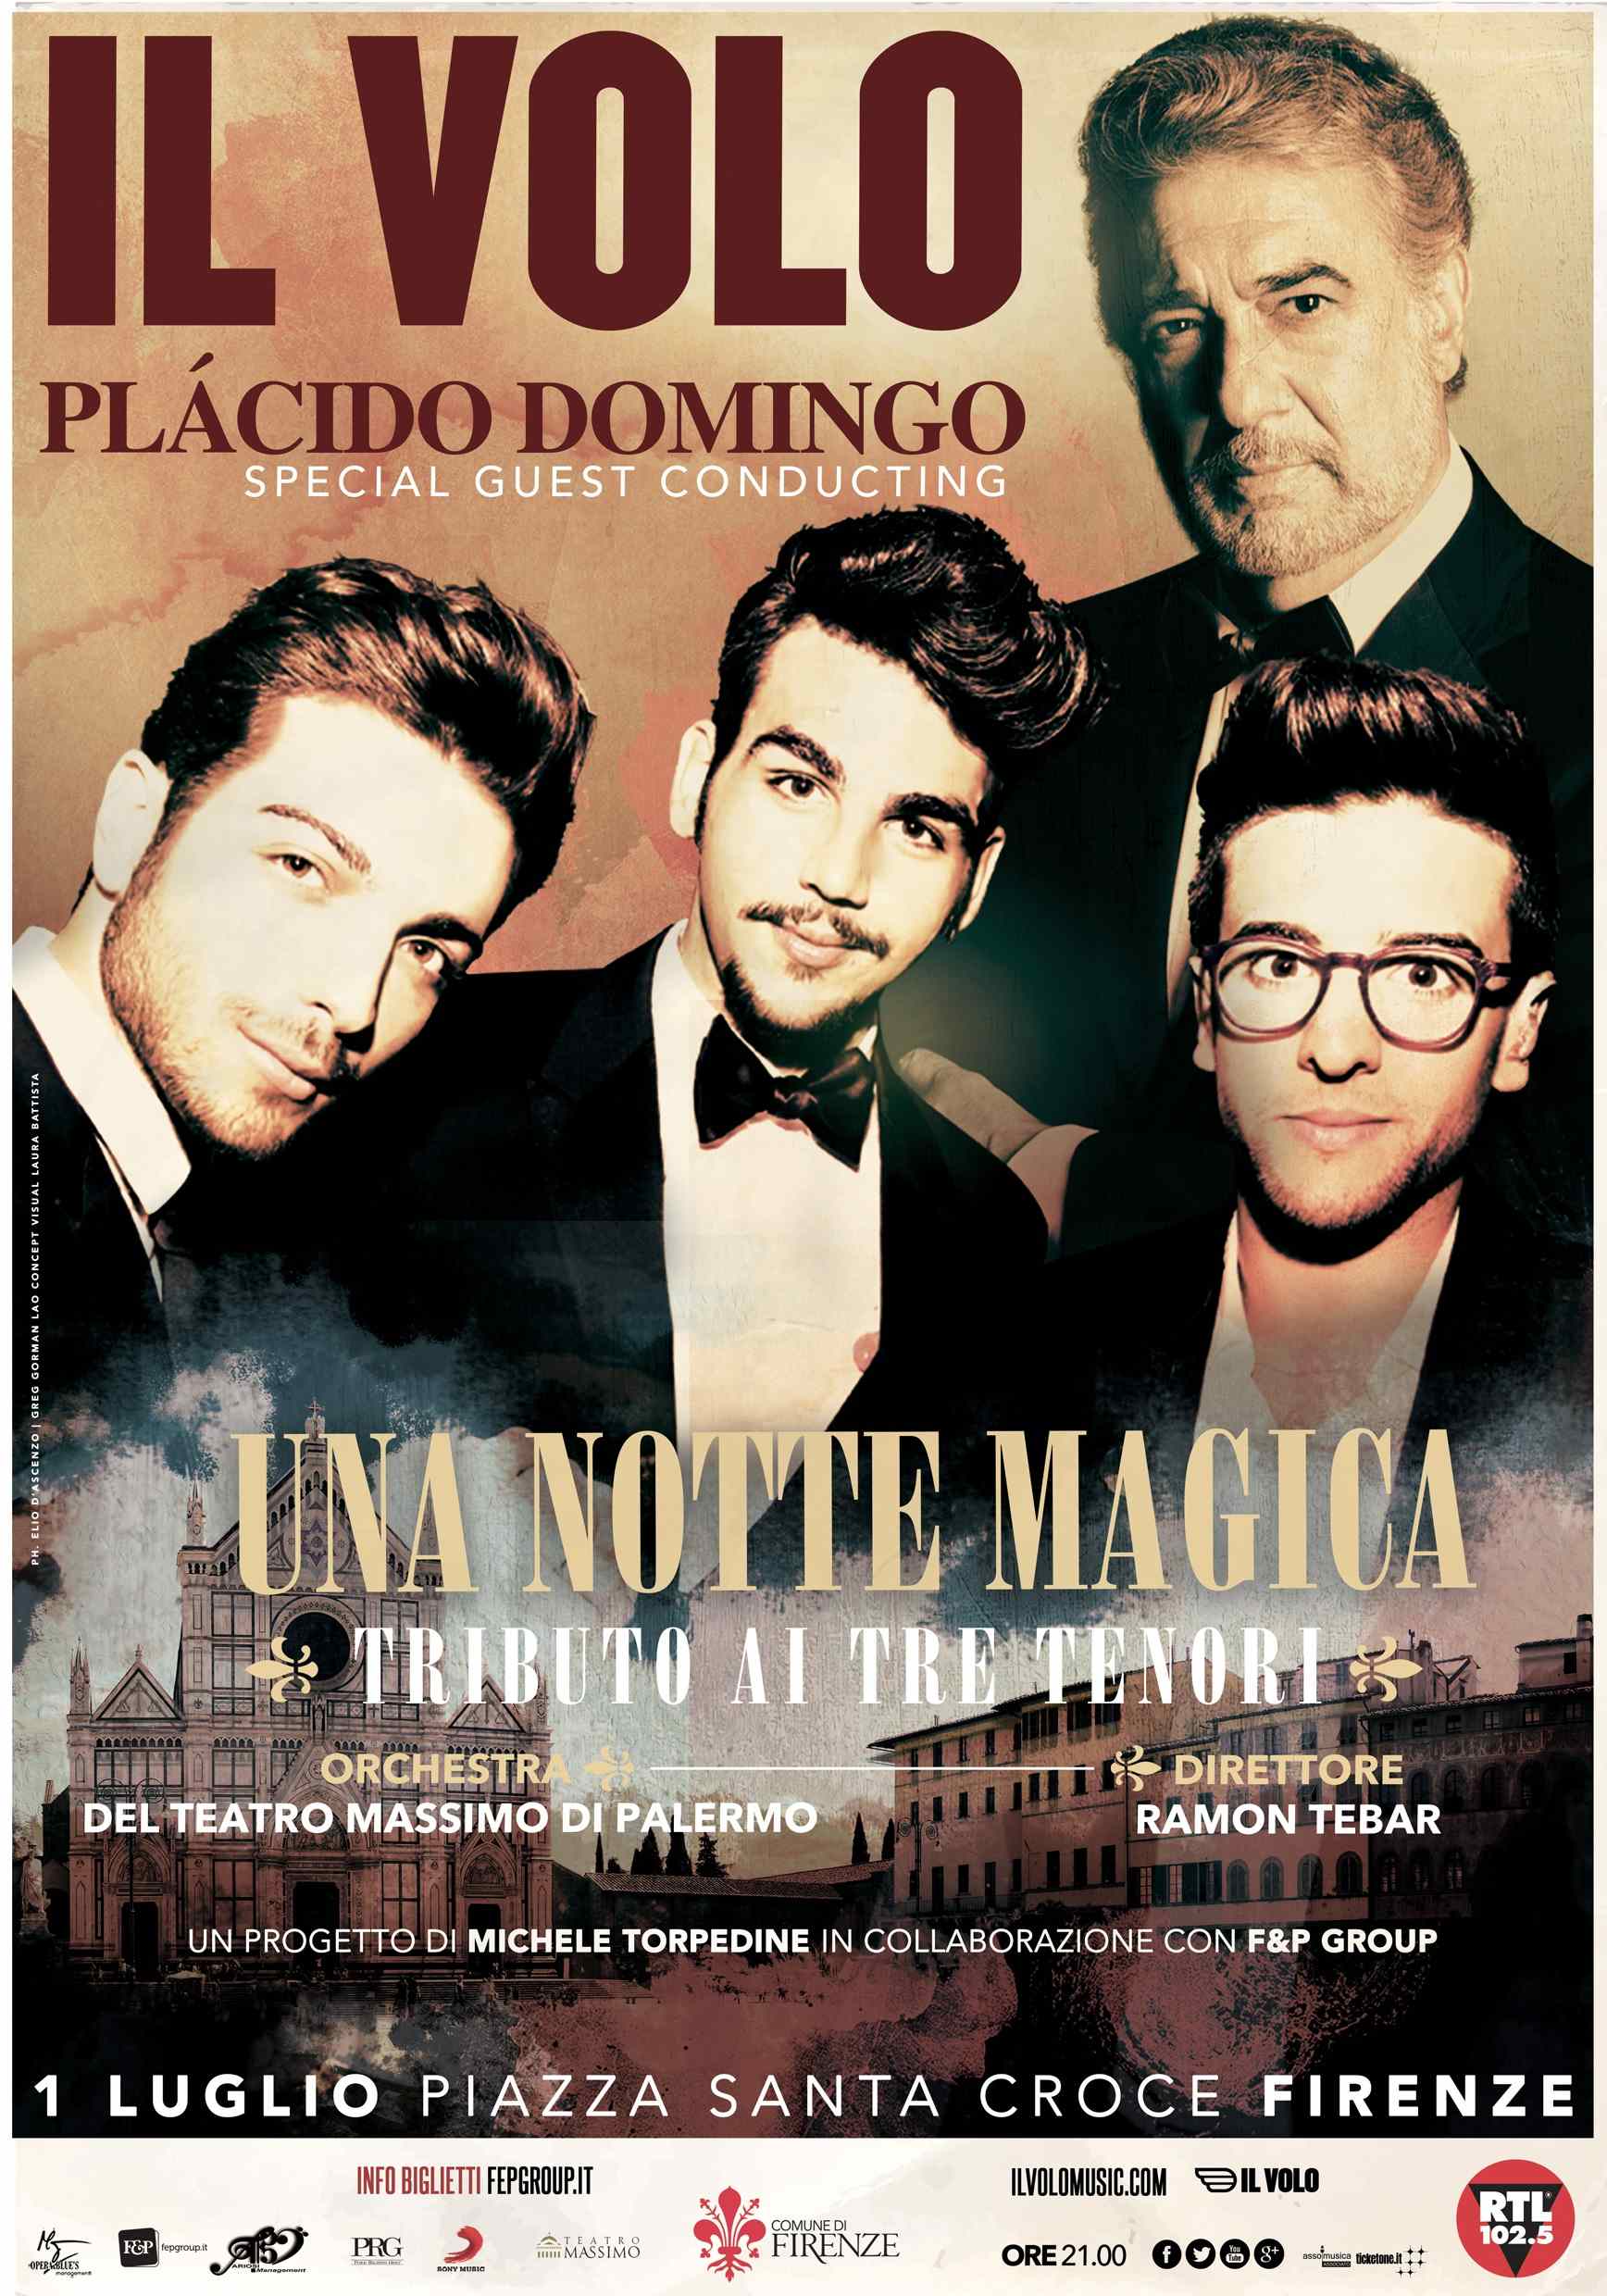 Il Volo oraz Placido Domingo razem na scenie w wyjątkowym koncercie A Magical Night – Tribute to The Three Tenors 